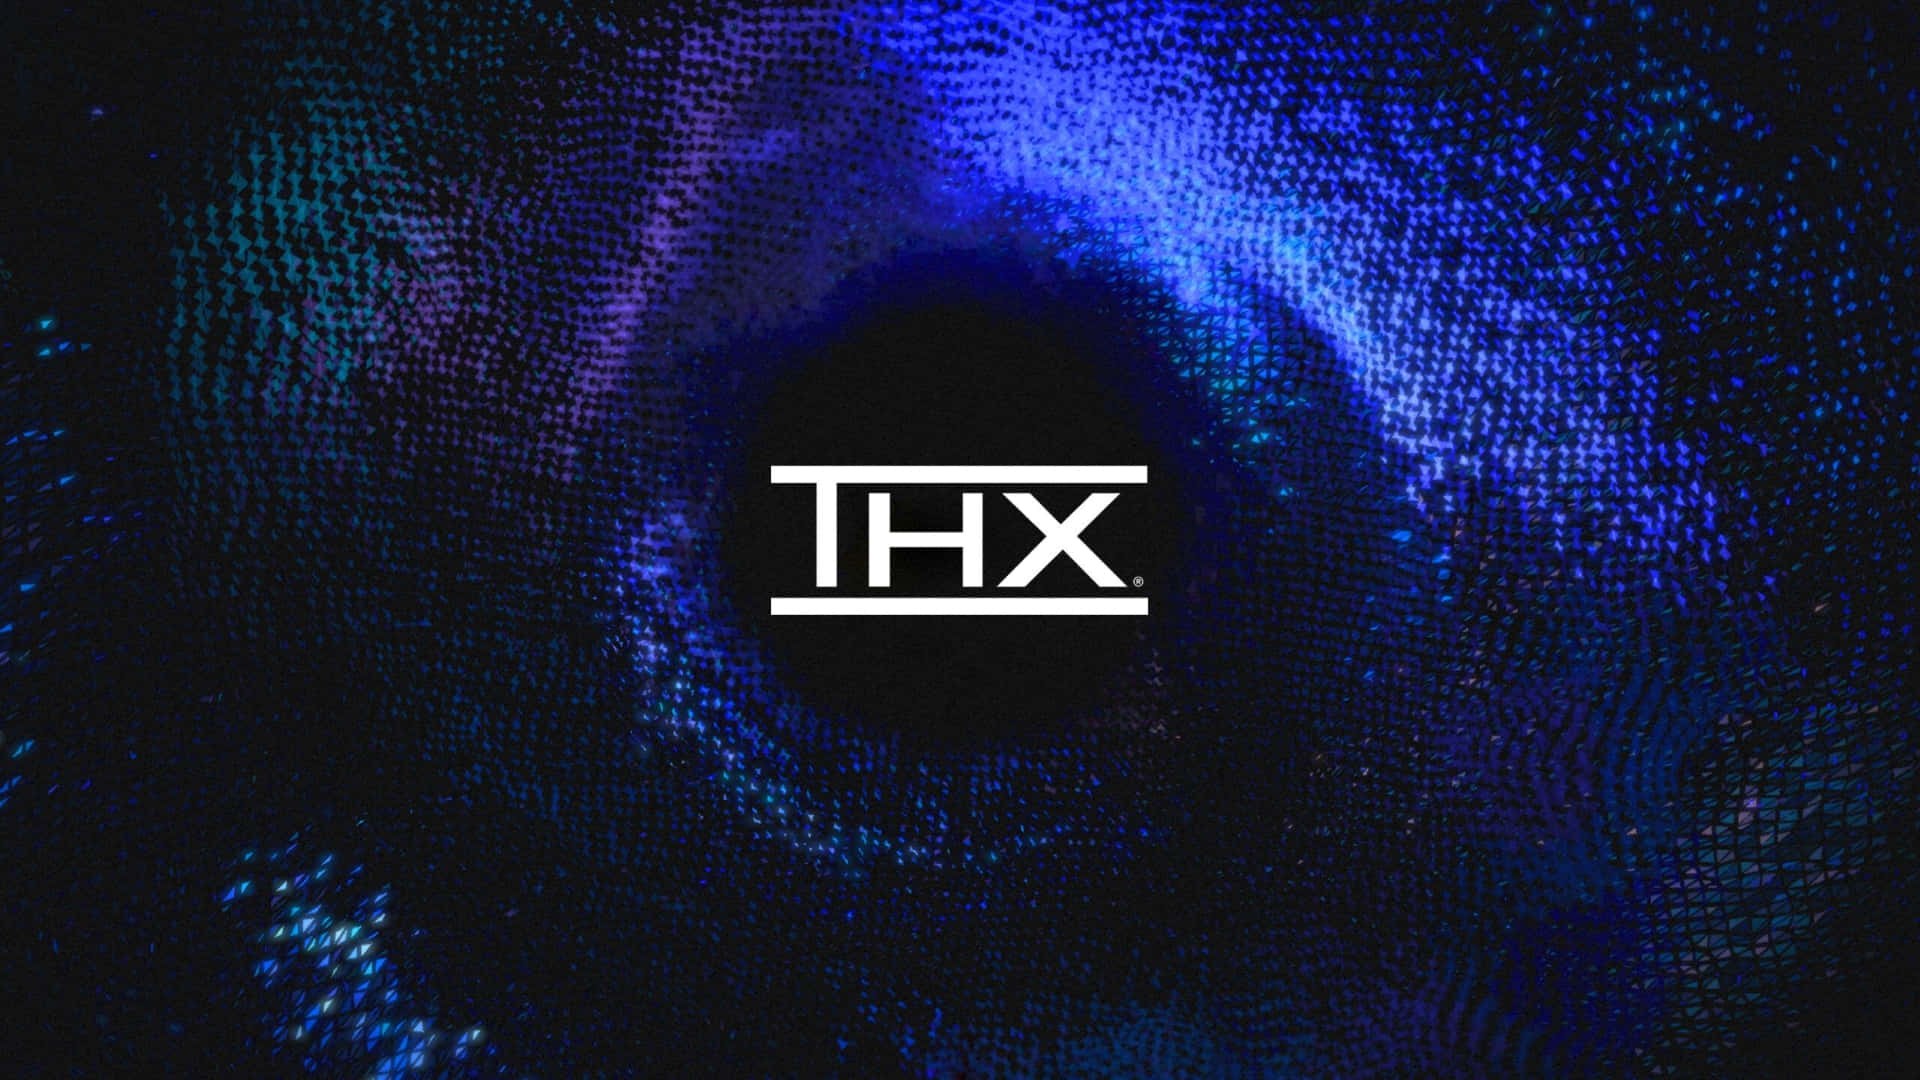 HD thx wallpapers | Peakpx